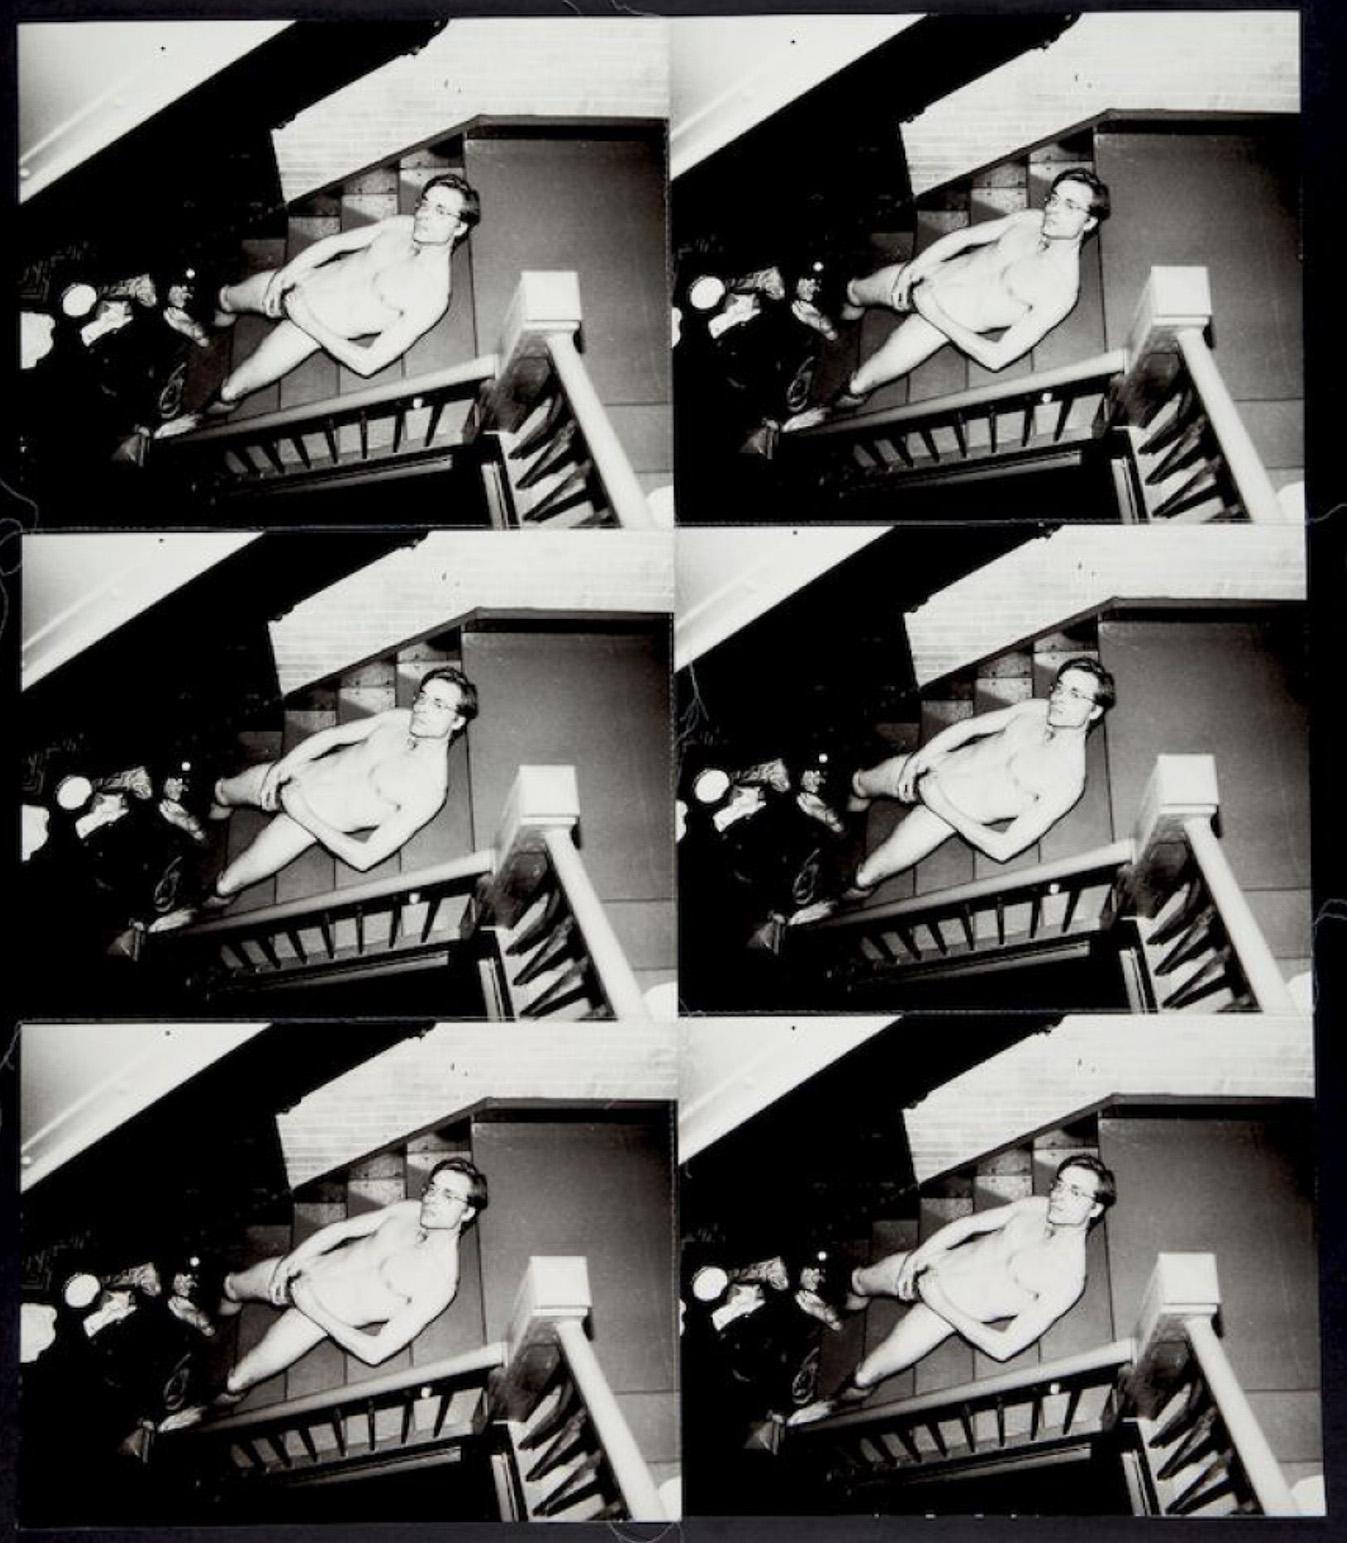 Sechs gestickte Silbergelatine-Silberdrucke eines männlichen Akts von Andy Warhol